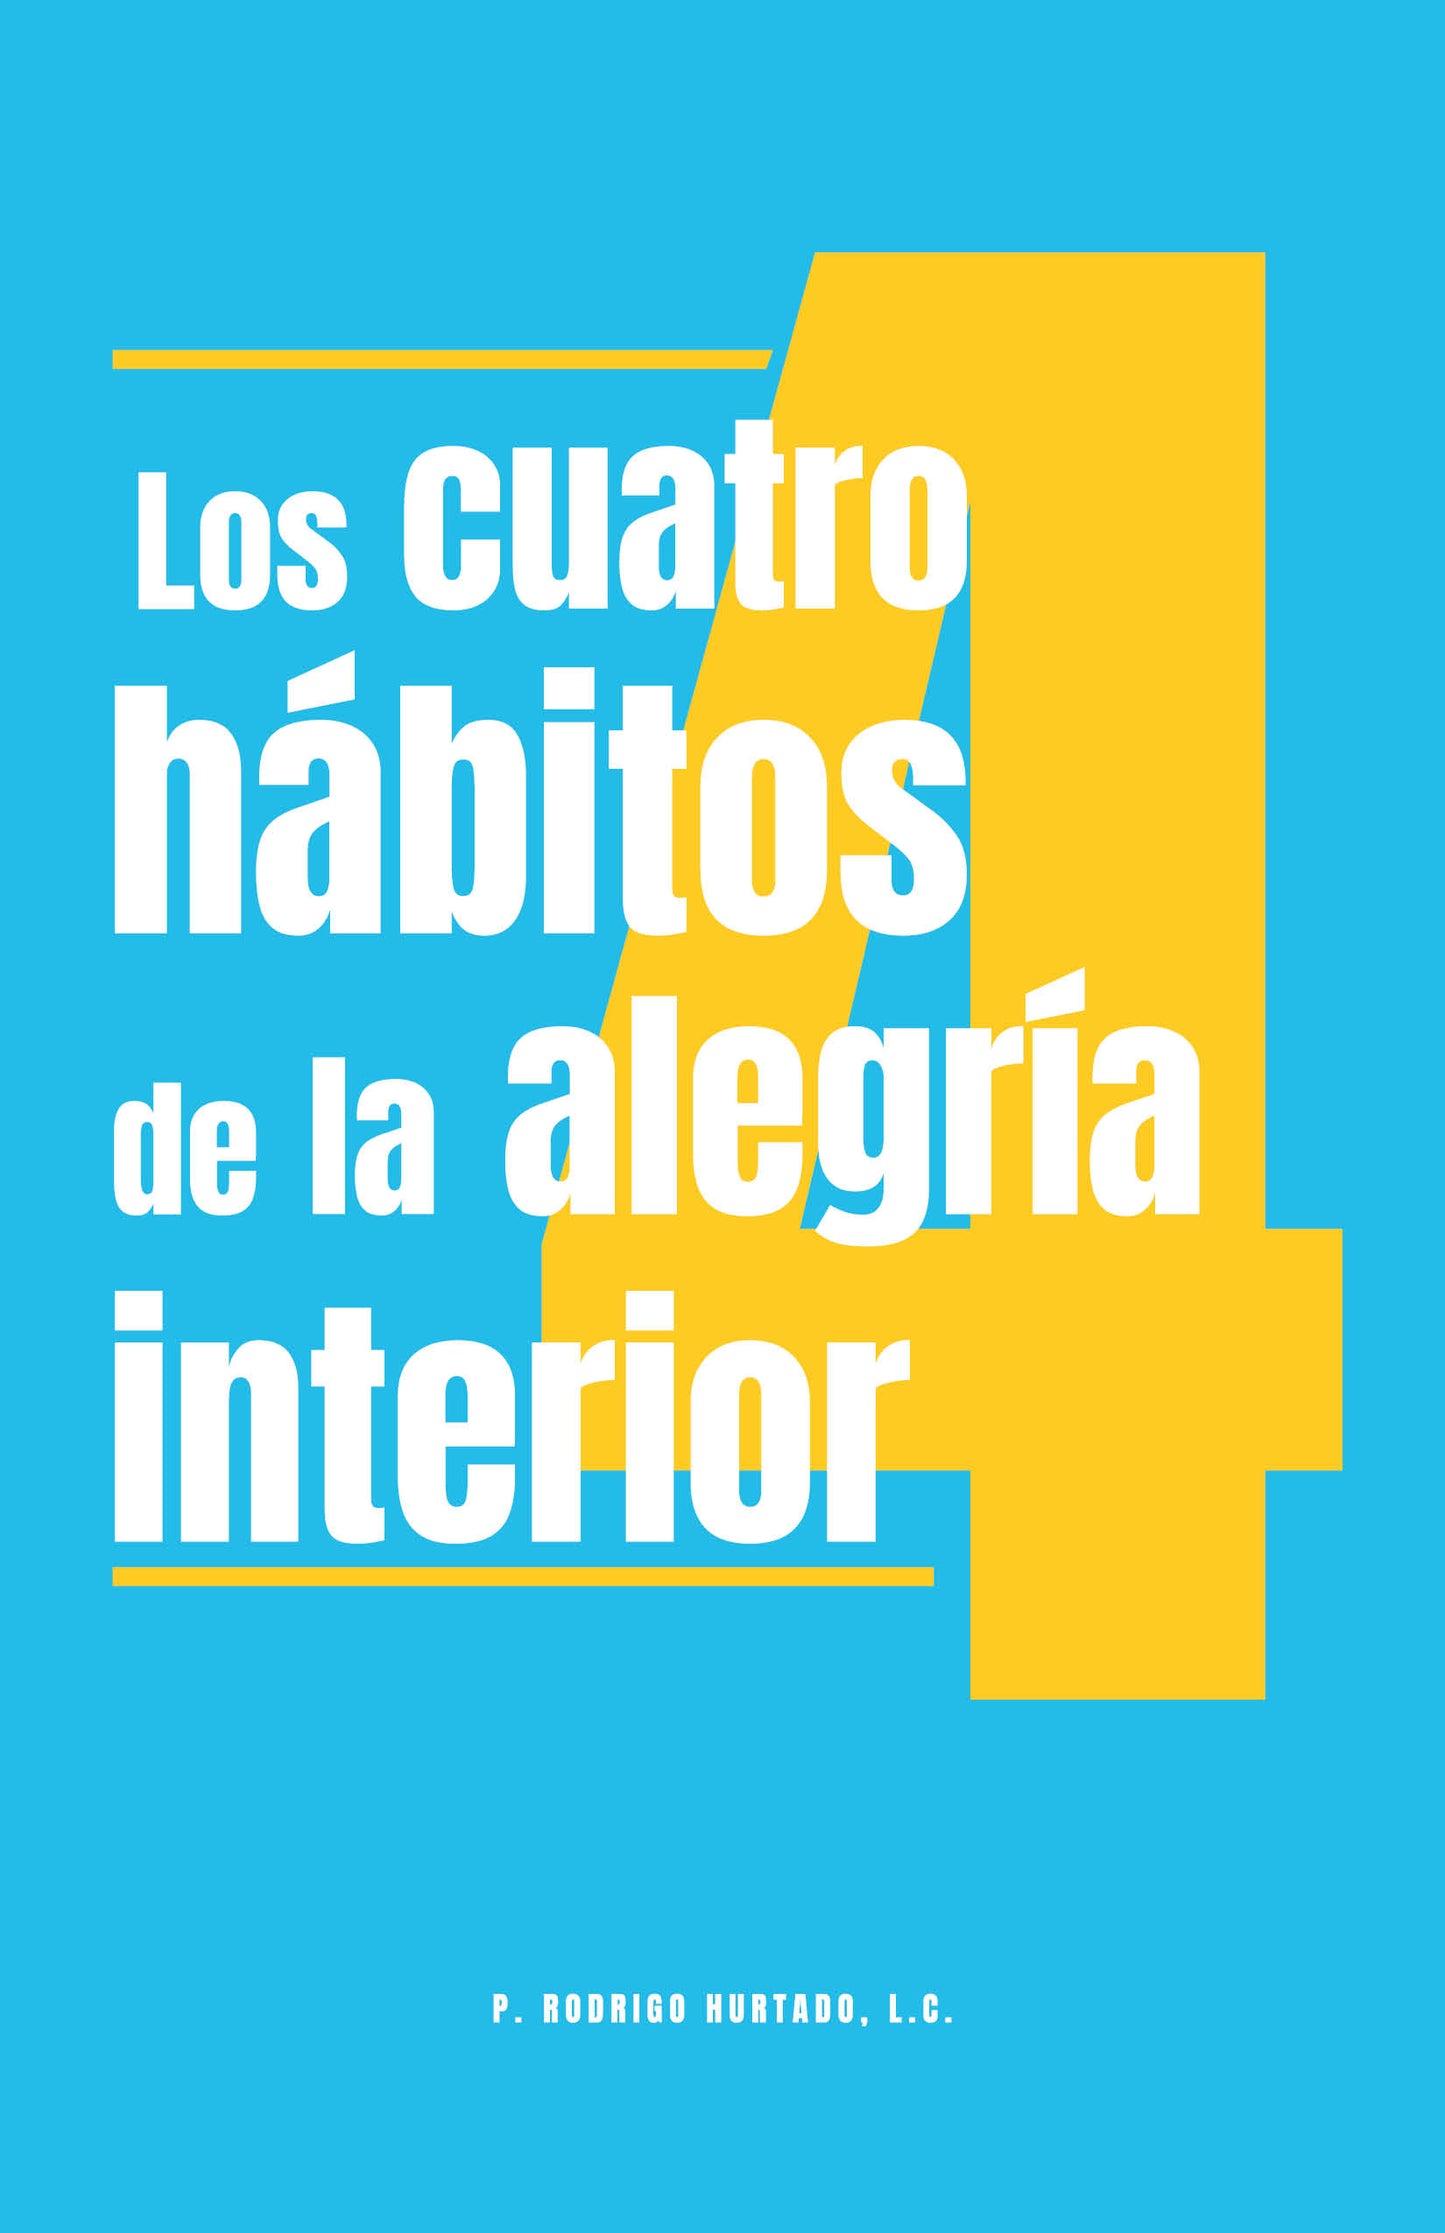 Los 4 hábitos de la alegría interior- P. Rodrigo Hurtado, L.C